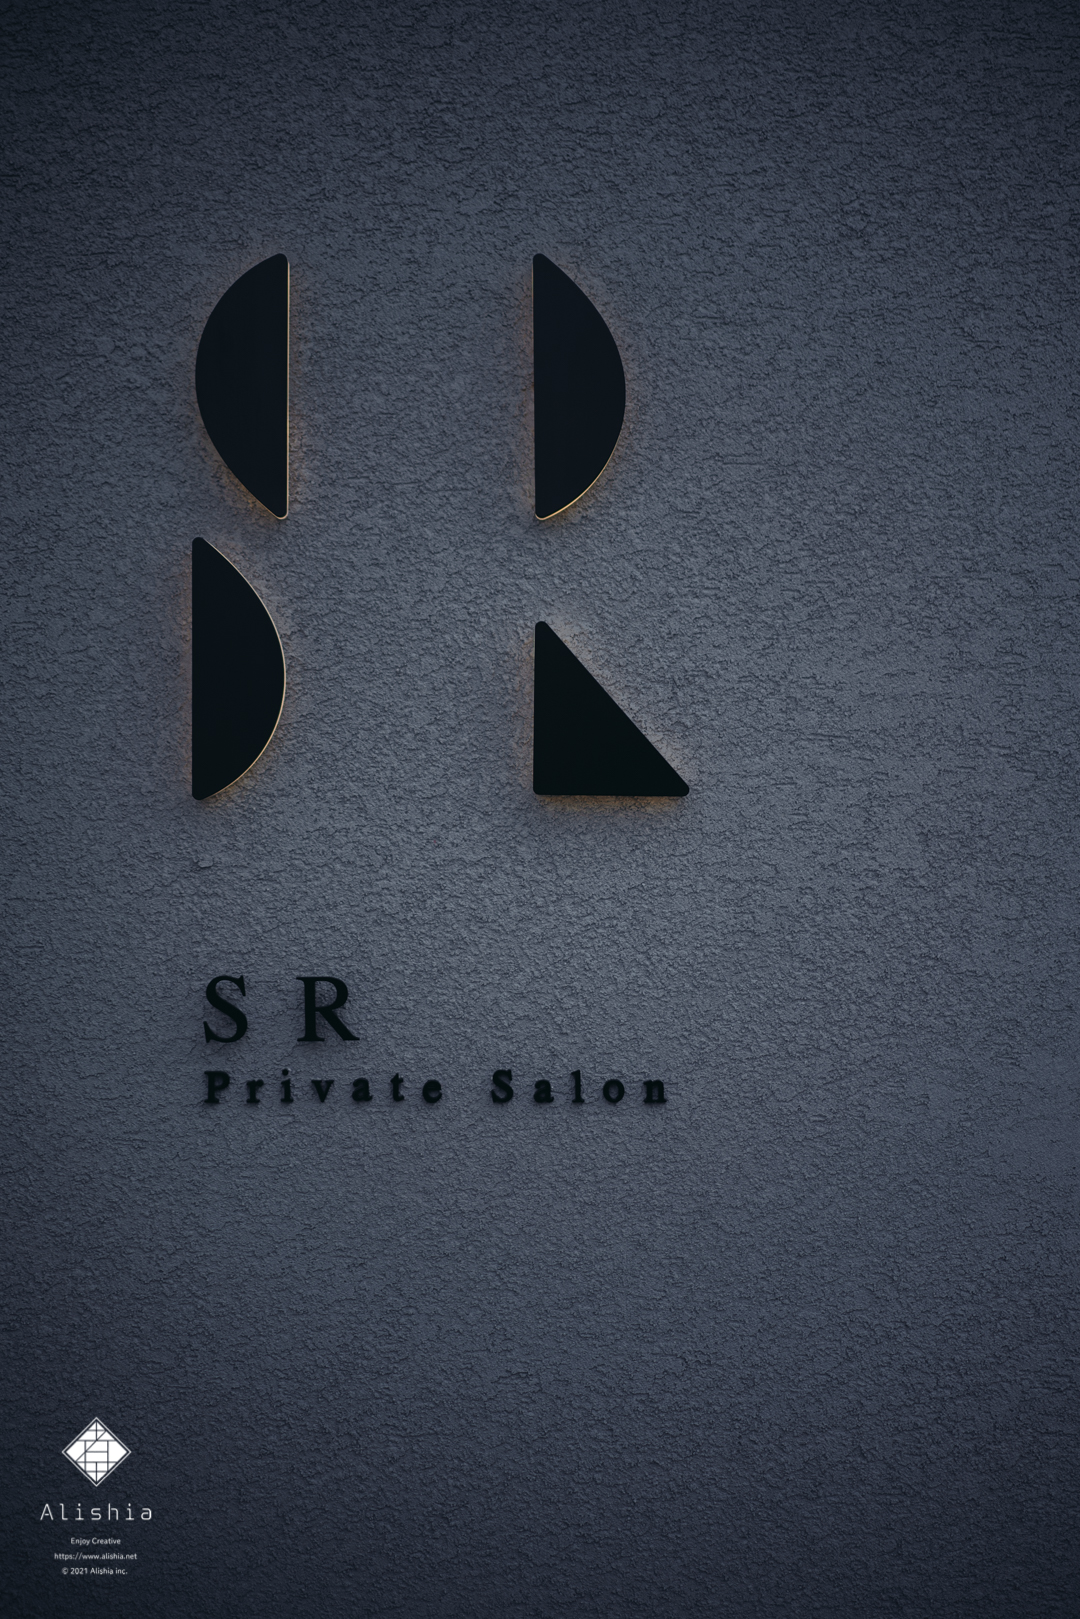 Private Salon SR